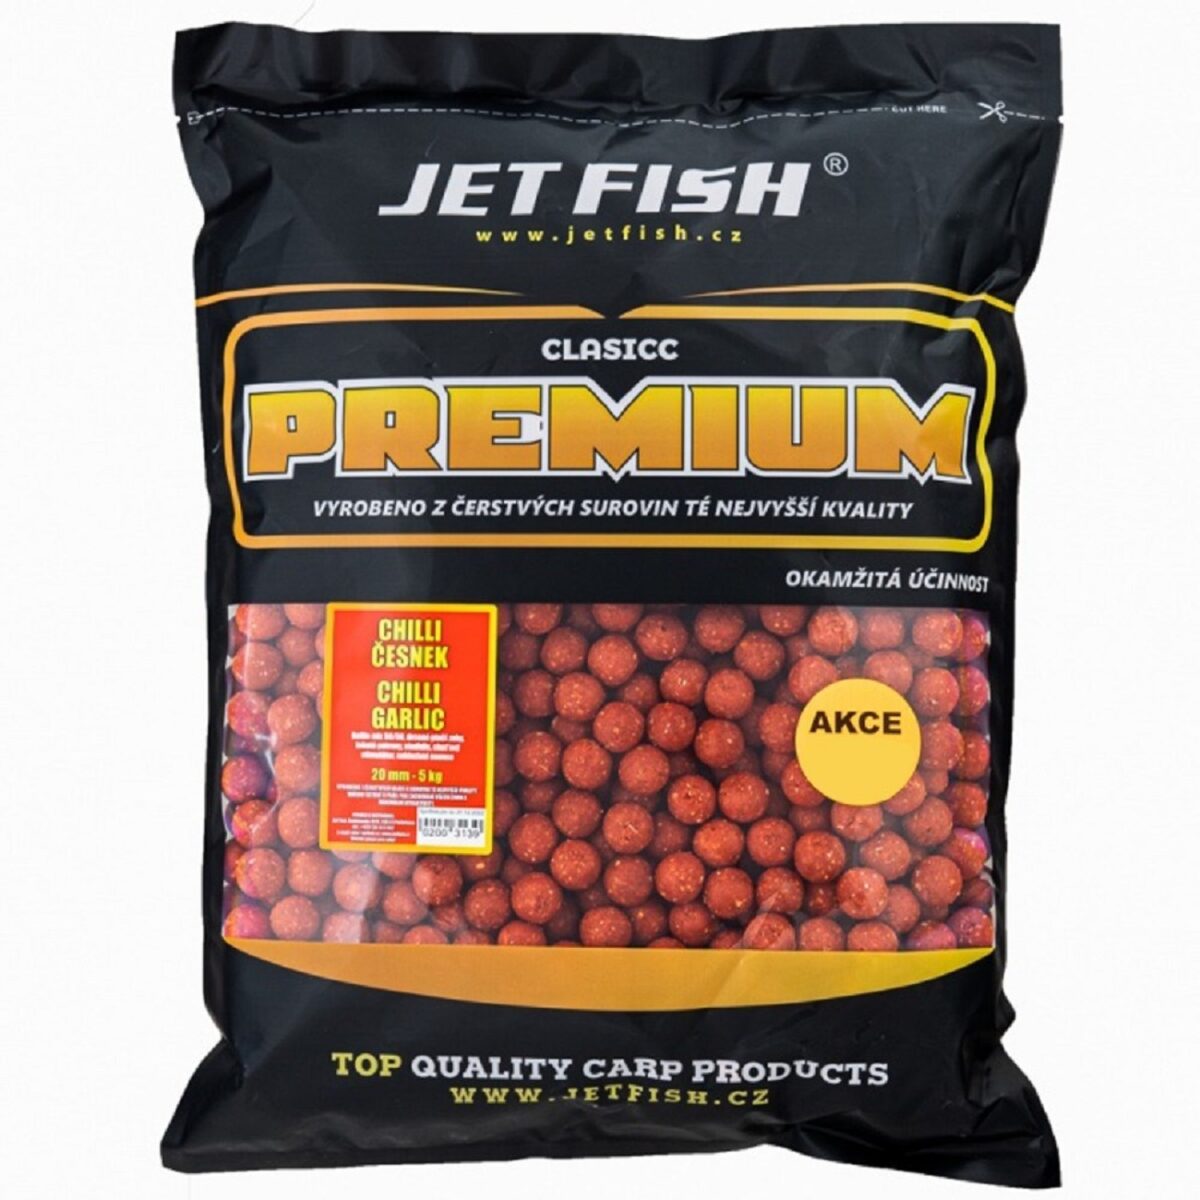 Velké balení boilies Jet Fish Premium Classic Chilli Česnek